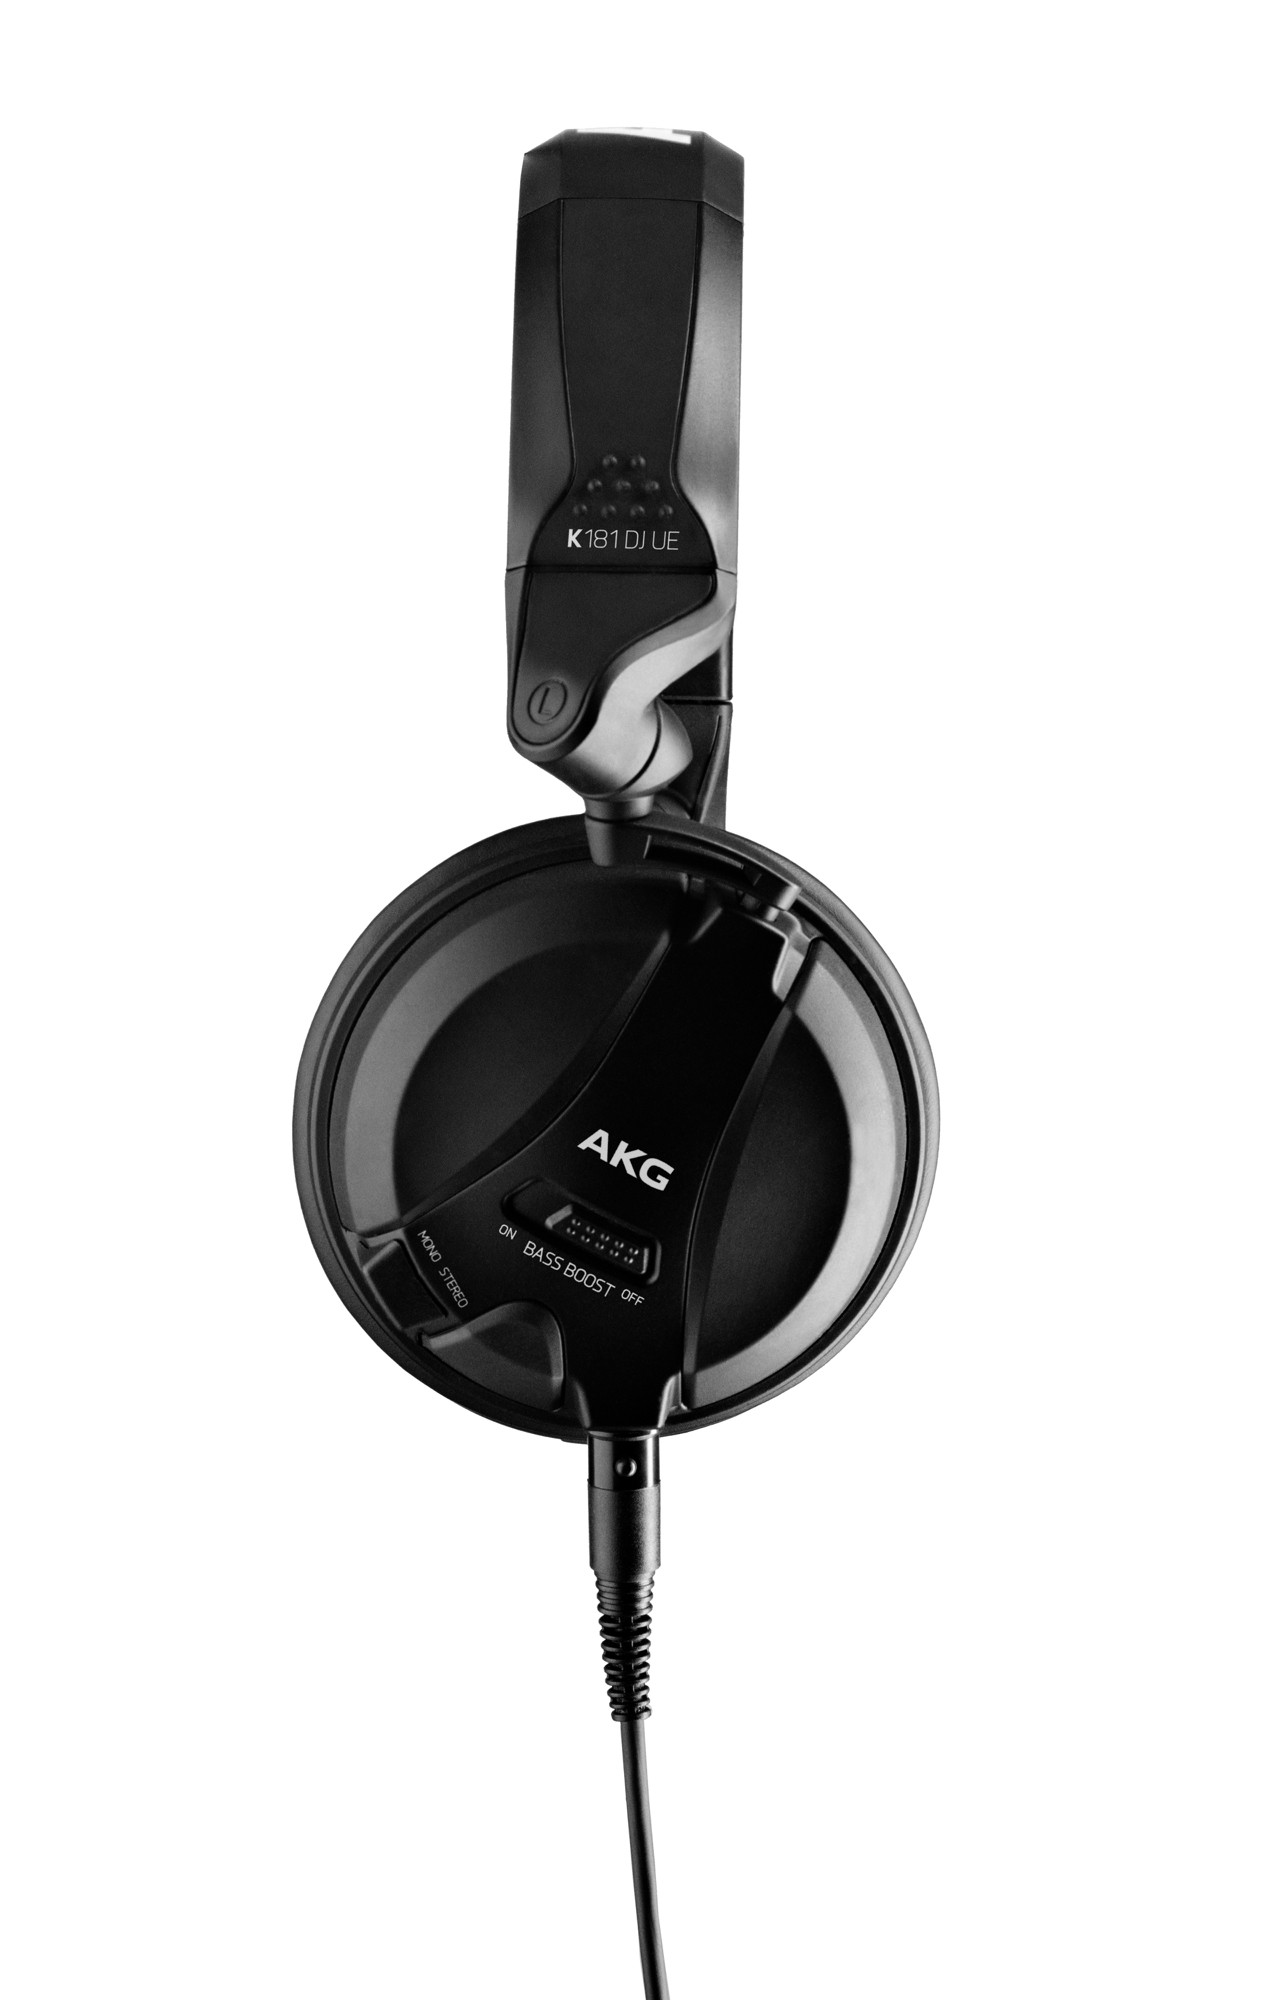 Akg K181 Djue - Studio & DJ Headphones - Variation 2